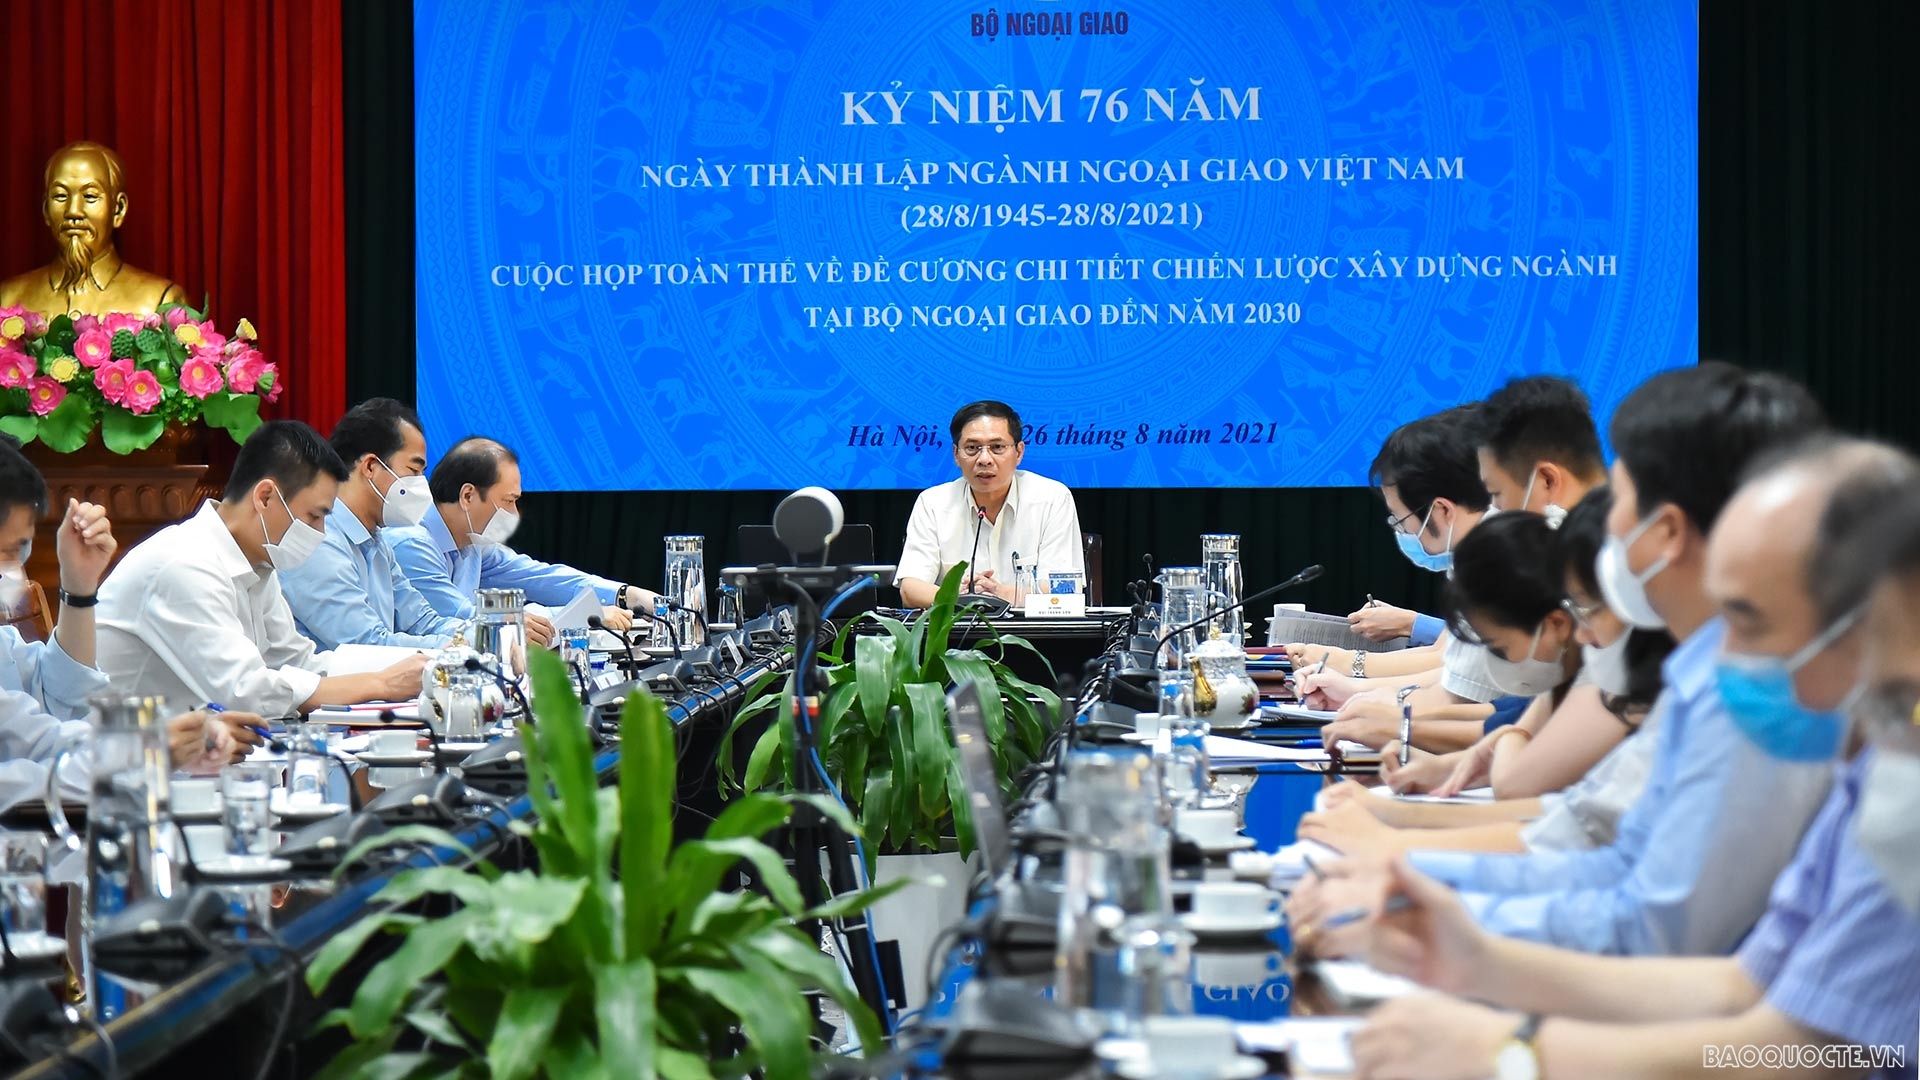 Bộ trưởng Ngoại giao Bùi Thanh Sơn đã chủ trì cuộc họp đóng góp ý kiến về Đề cương chi tiết Chiến lược xây dựng và phát triển ngành Ngoại giao đến năm 2030. (Ảnh: Tuấn Anh)